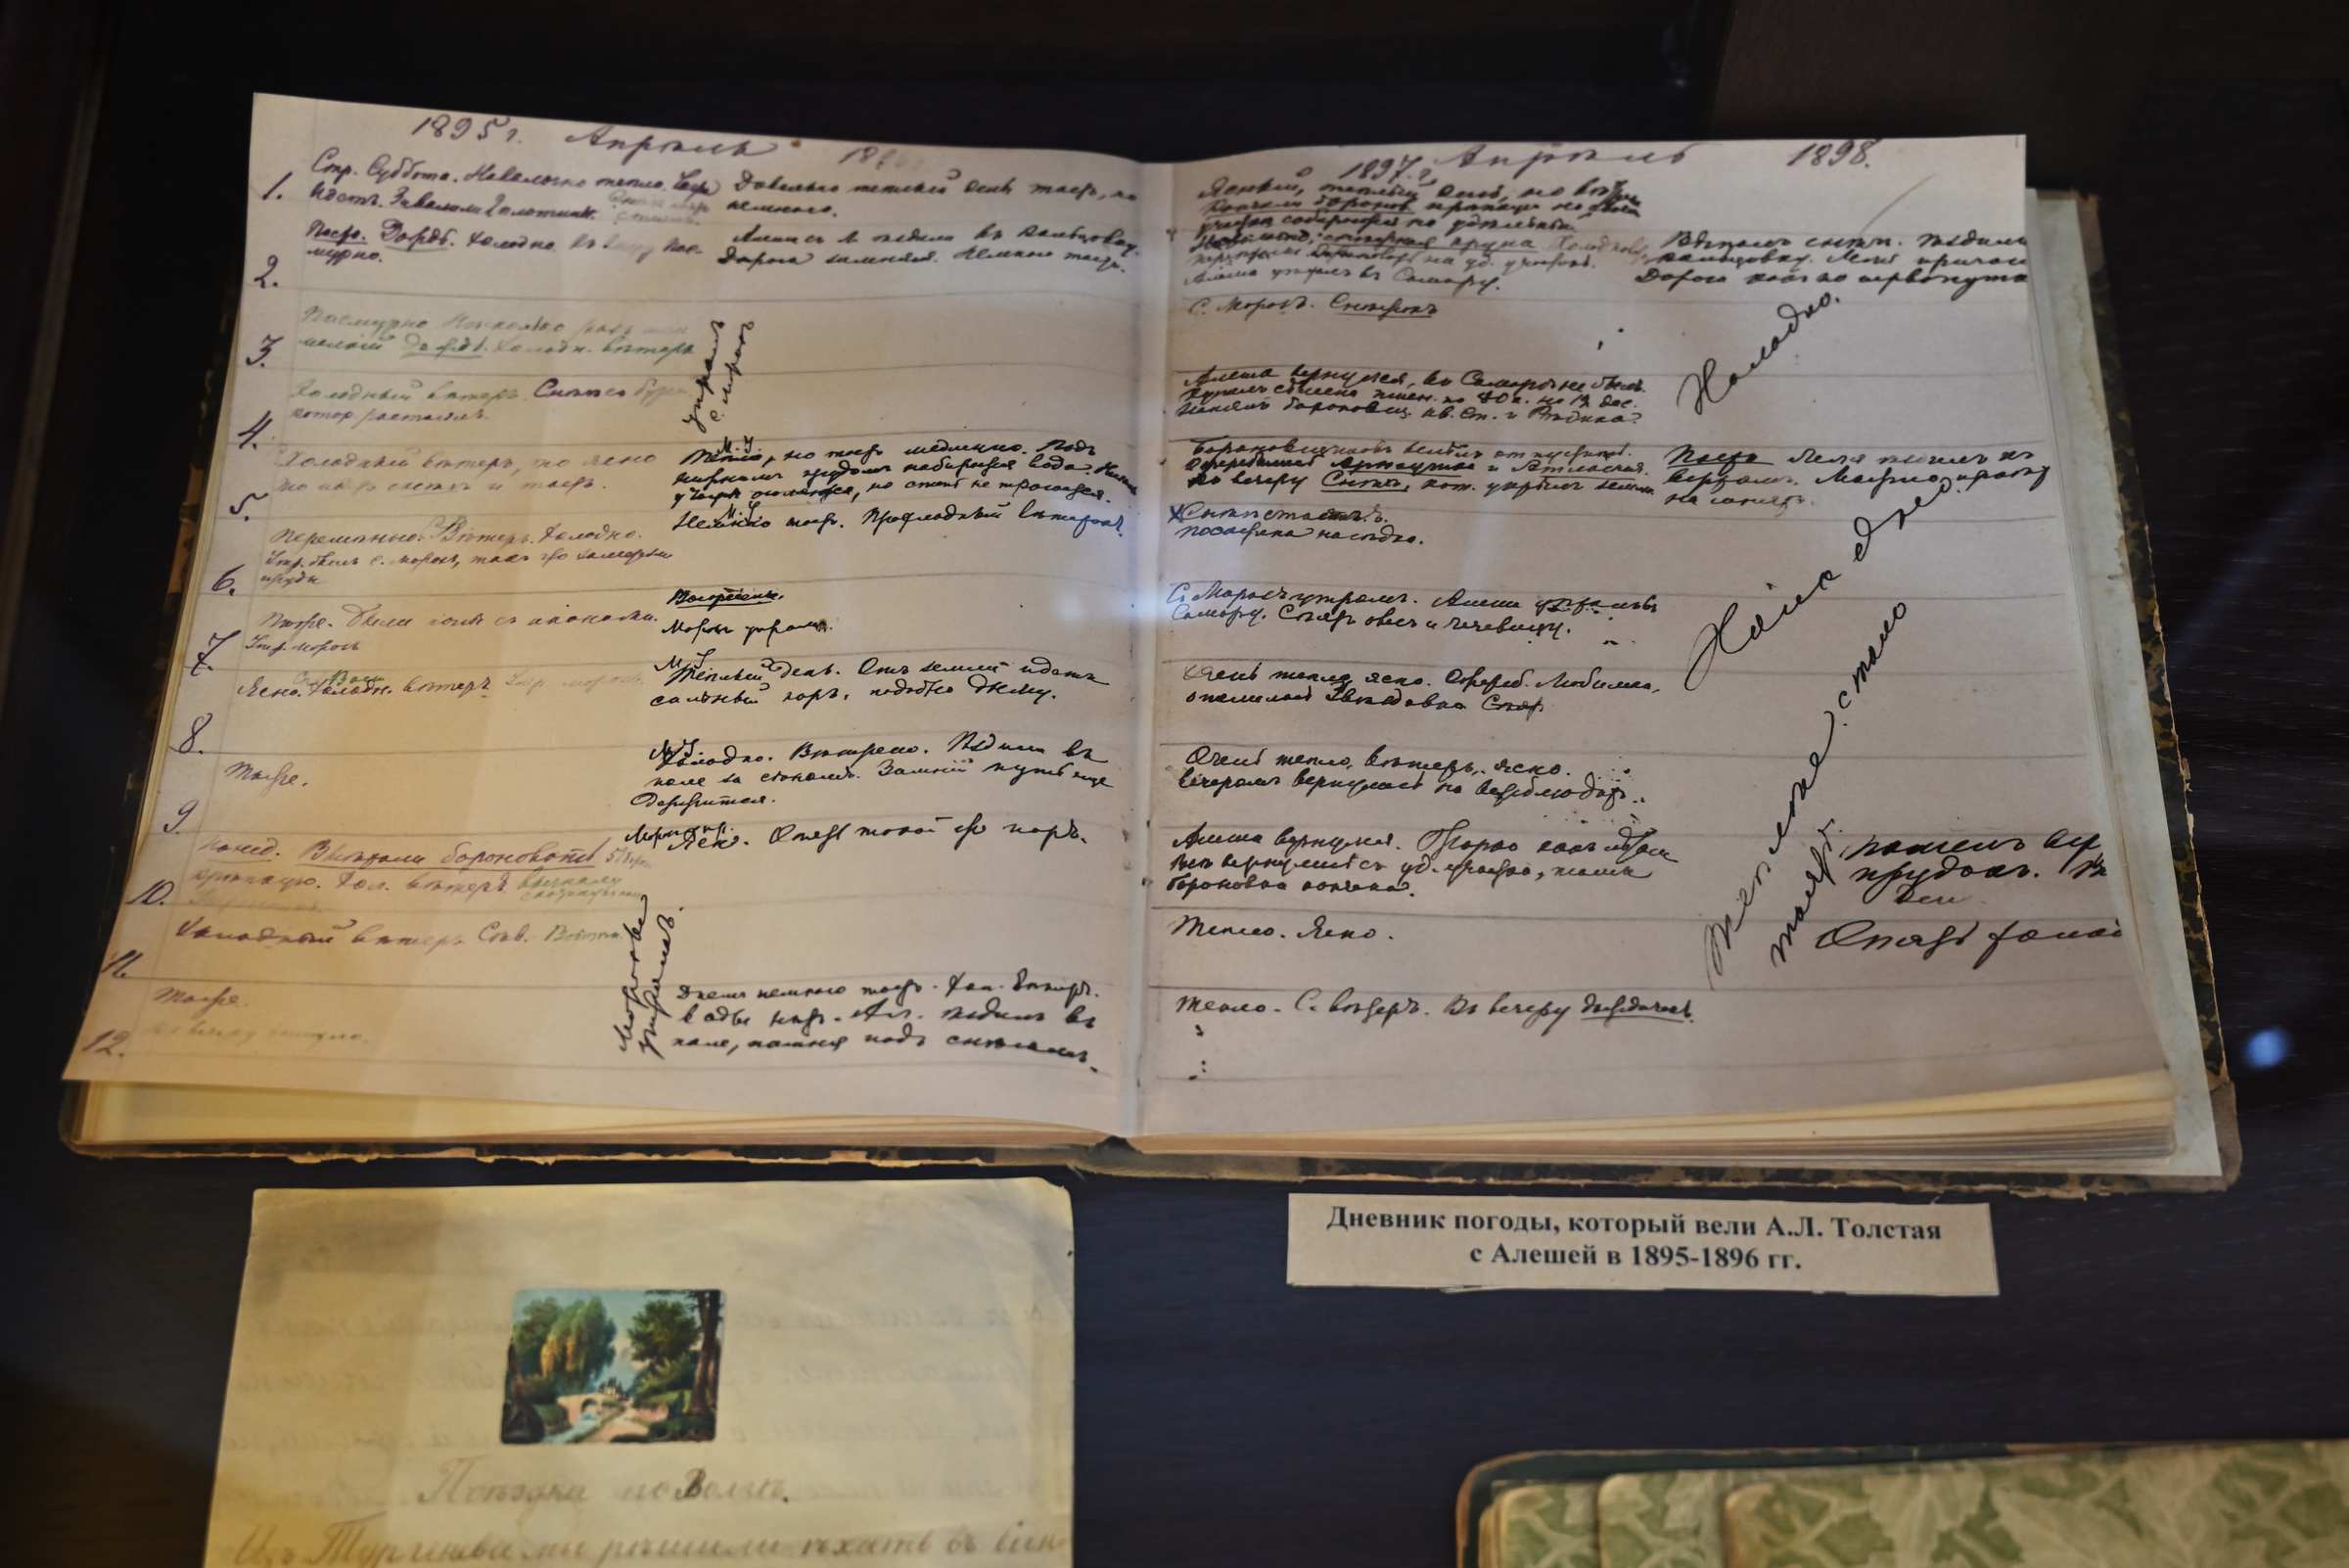 Экспозиция в музее Алексея Толстого в Самаре. Дневник погоды, который вели А. Л. Толстая с сыном Алёшей в 1895 - 1896 годах.